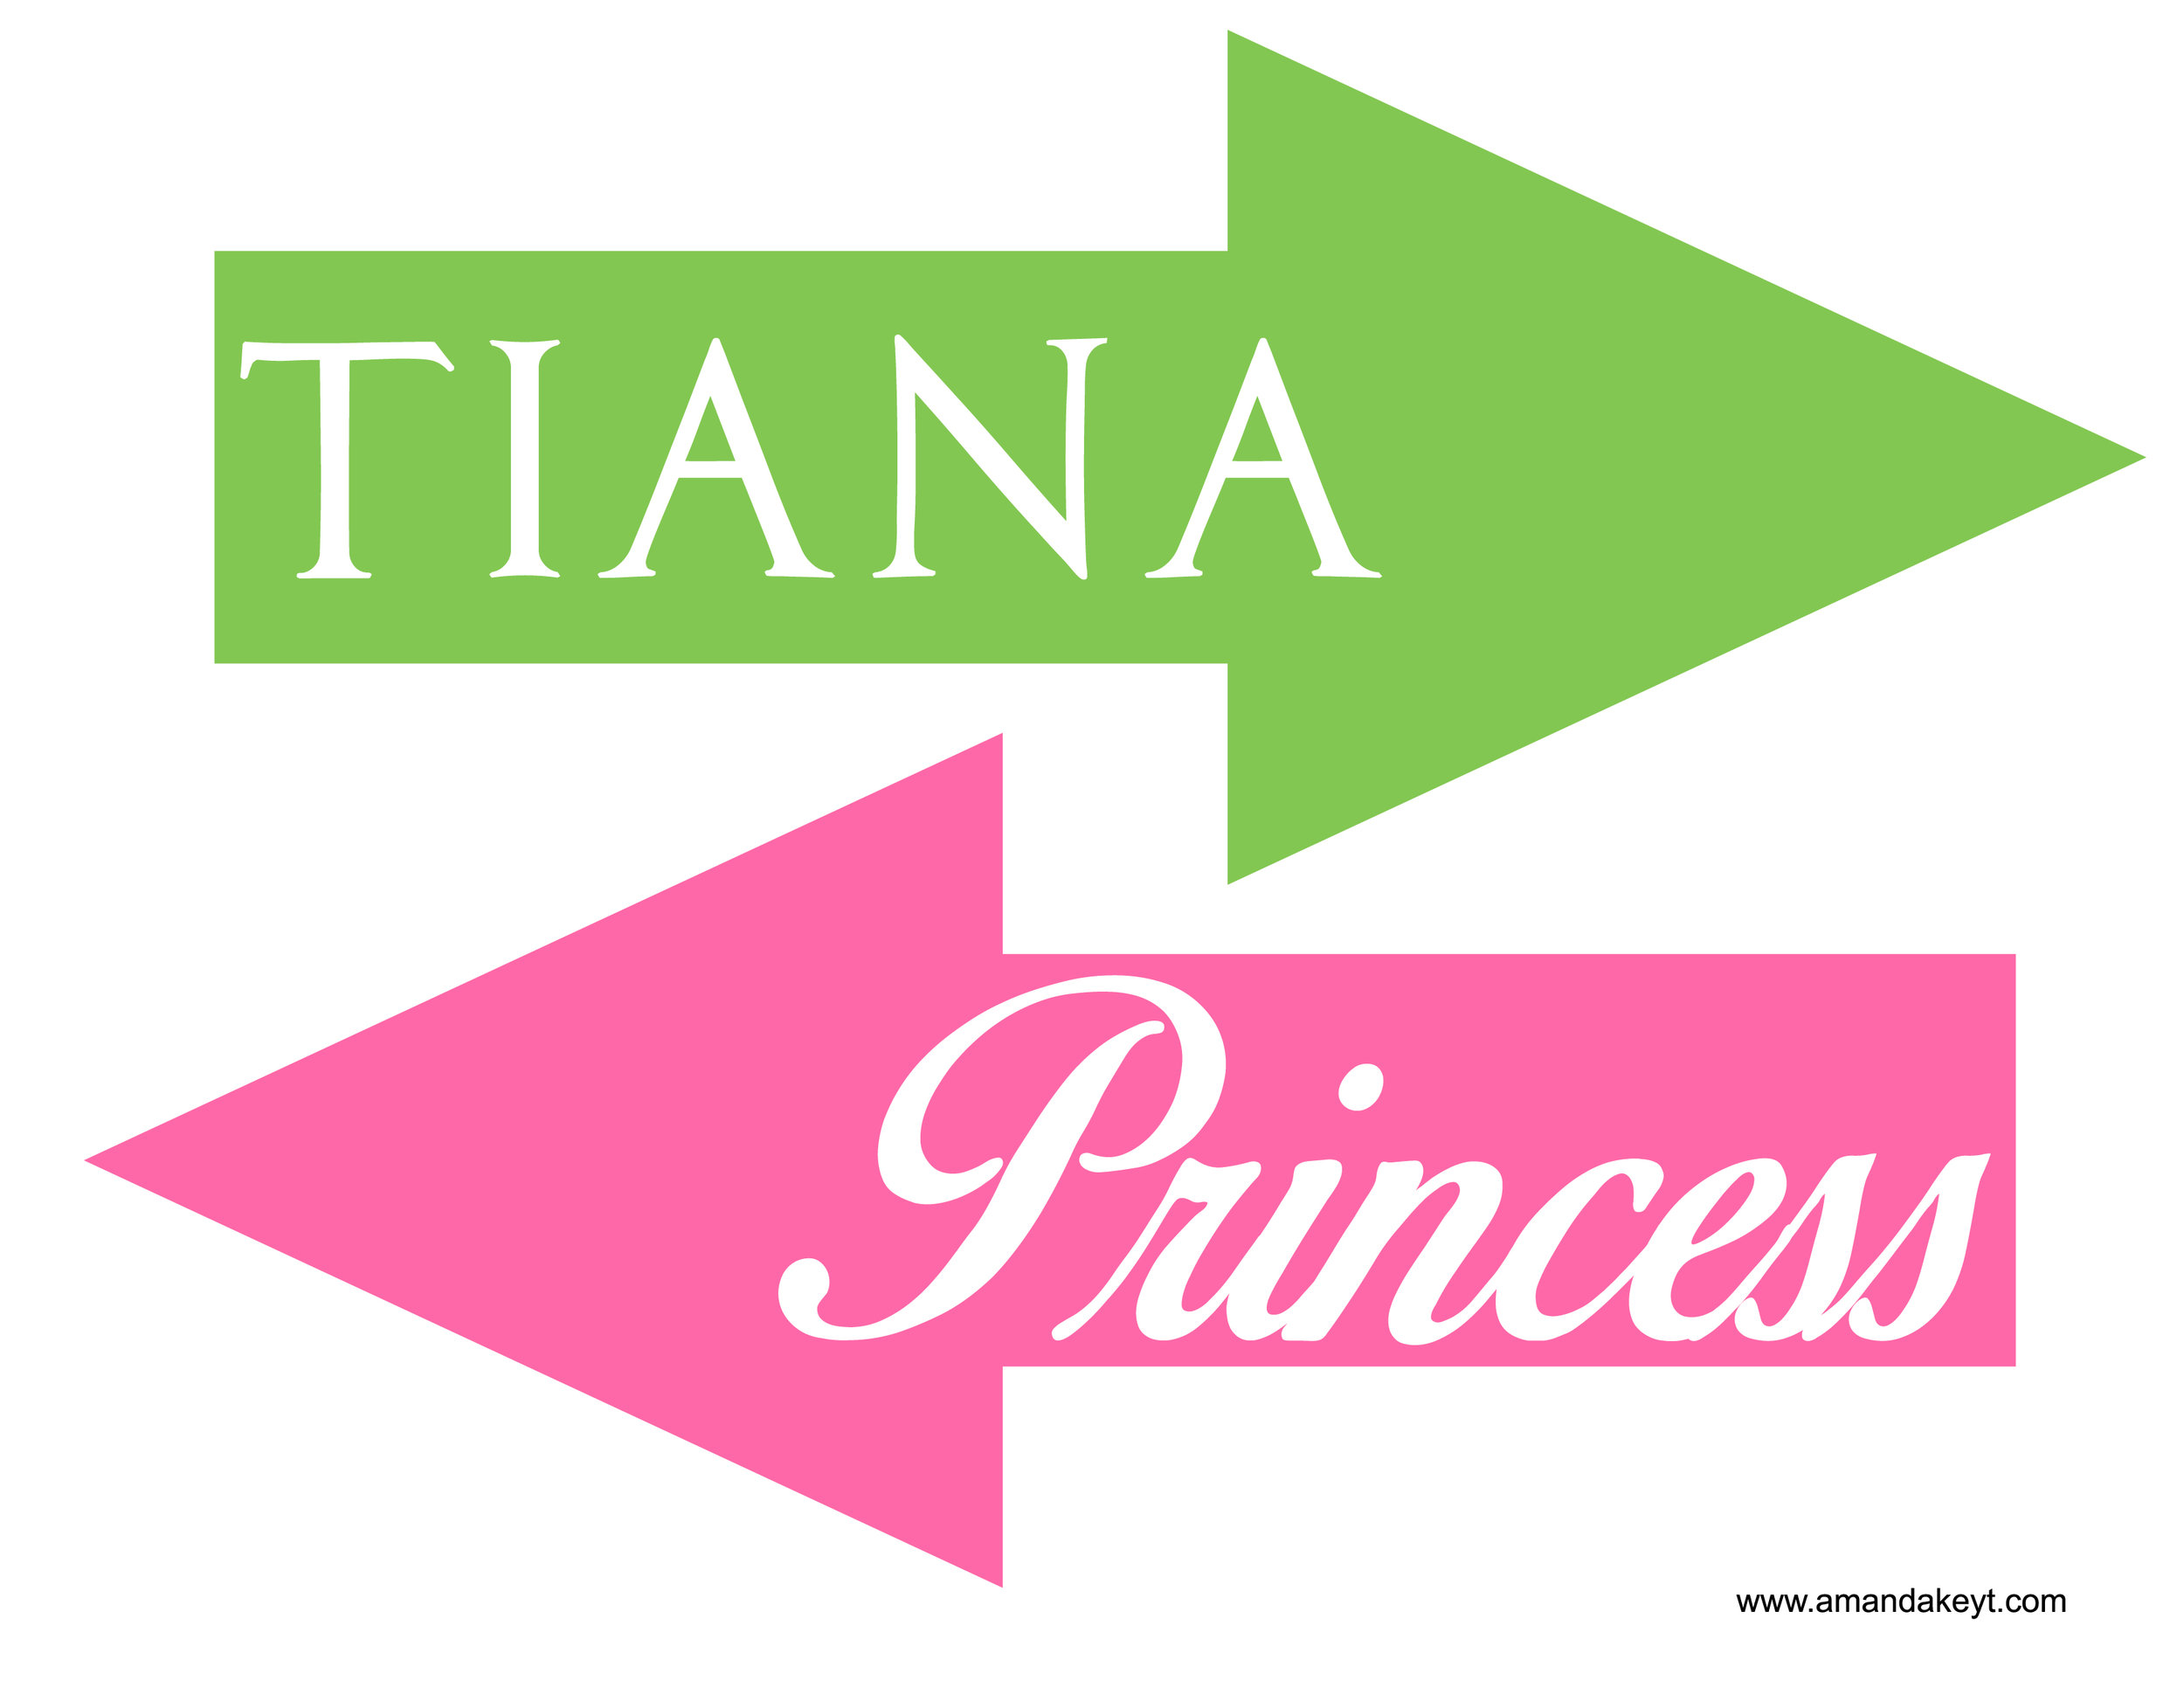 All Disney Princess